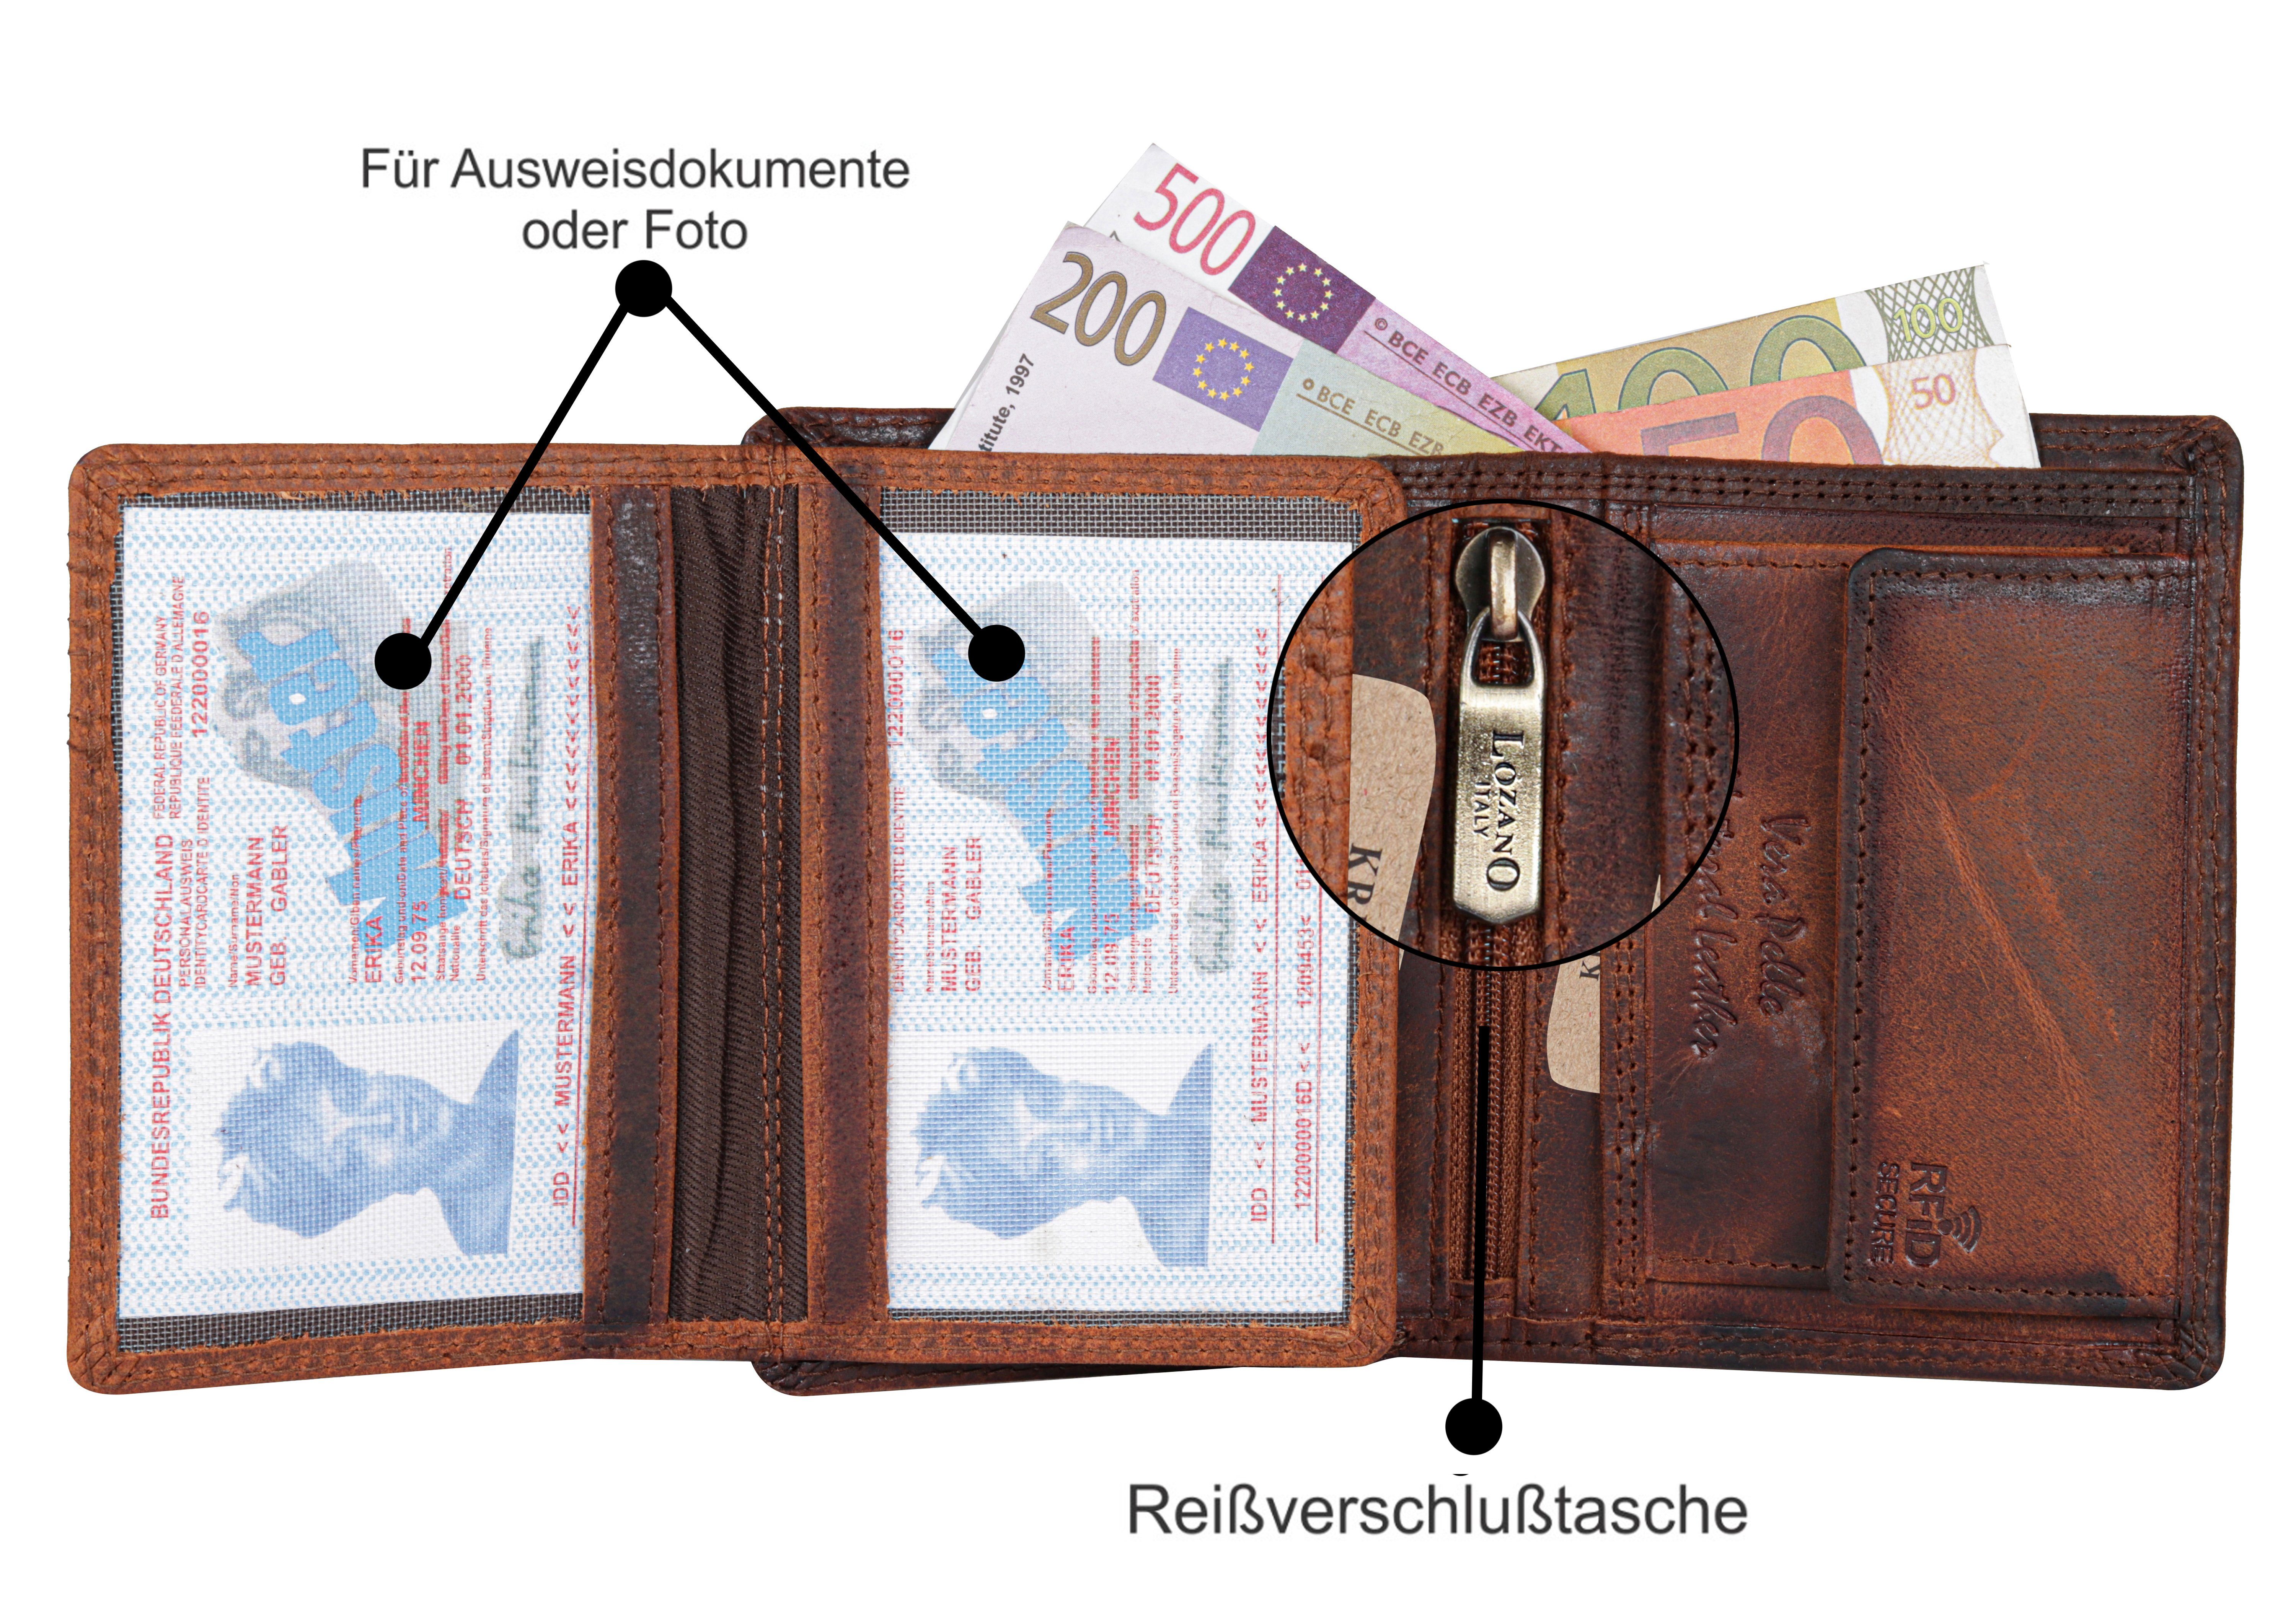 SHG Geldbörse Herren Börse RFID Schutz Brieftasche Münzfach Portemonnaie, Büffelleder Lederbörse mit Leder Männerbörse